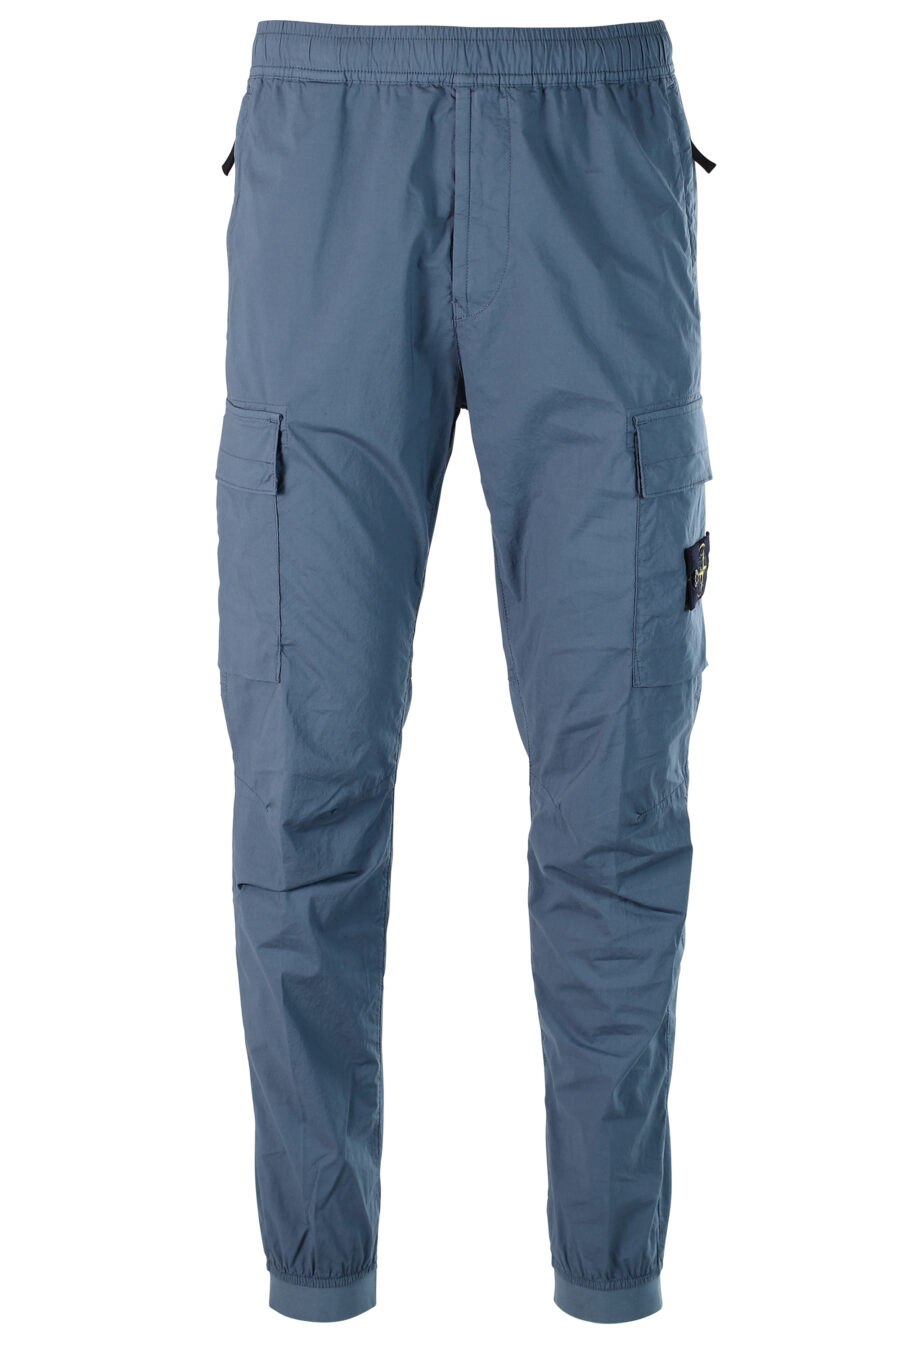 Pantalón azul estilo cargo con resorte y parche - 8052572543081